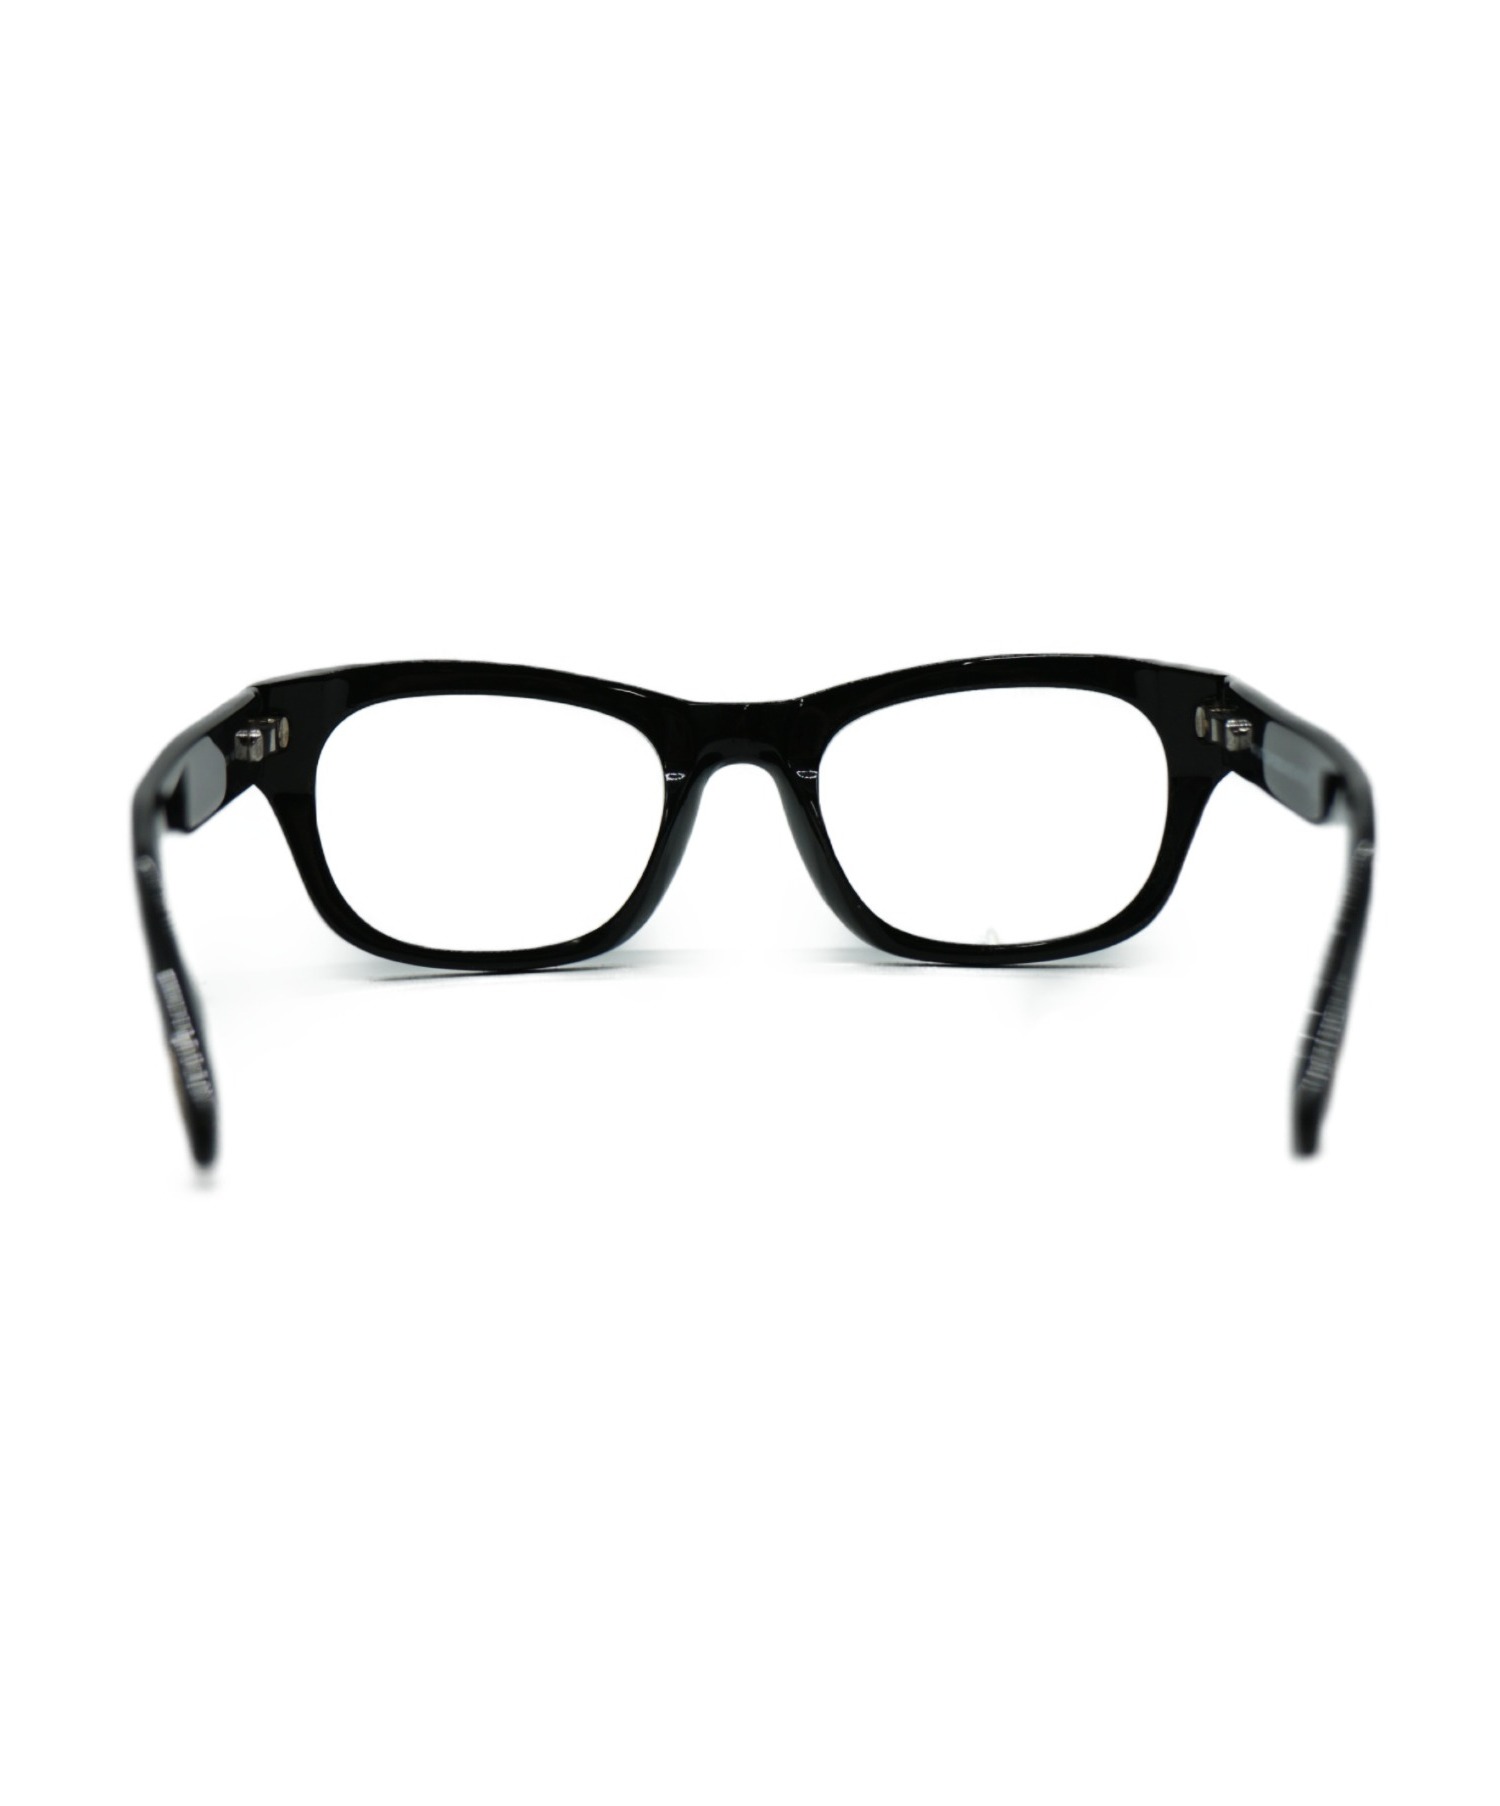 TOM FORD (トム フォード) 眼鏡 ブラック TF5252